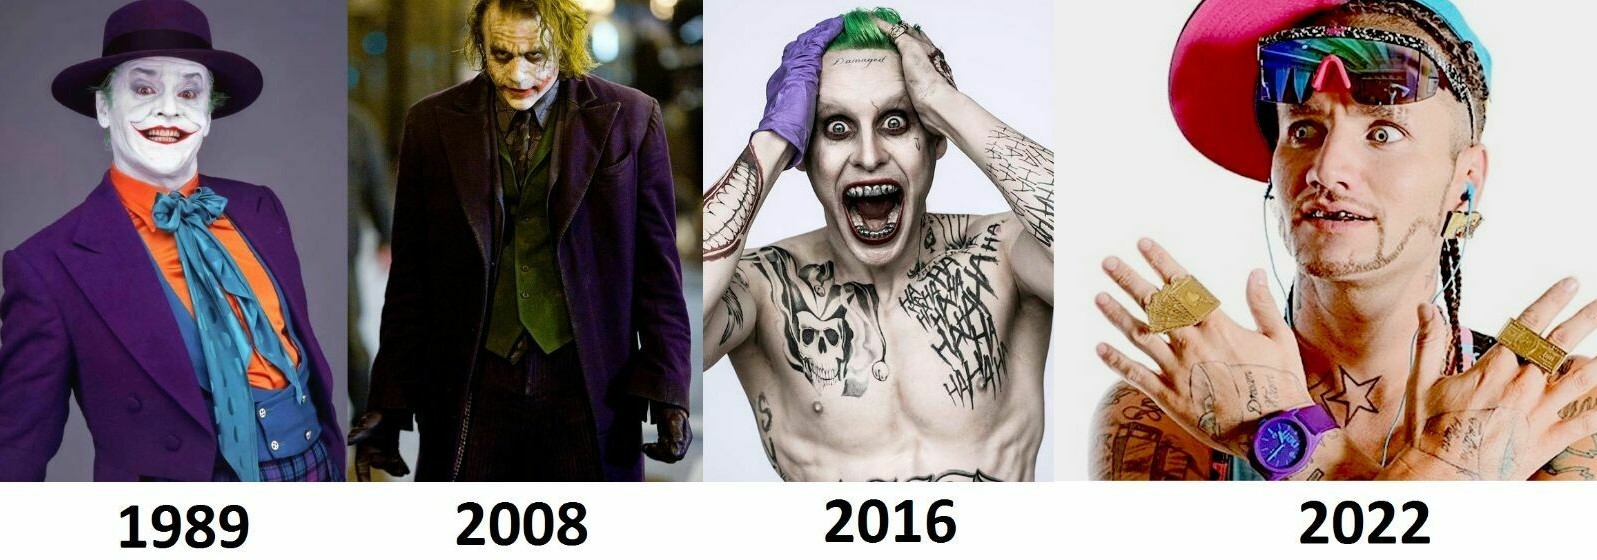 Joker evolution - meme